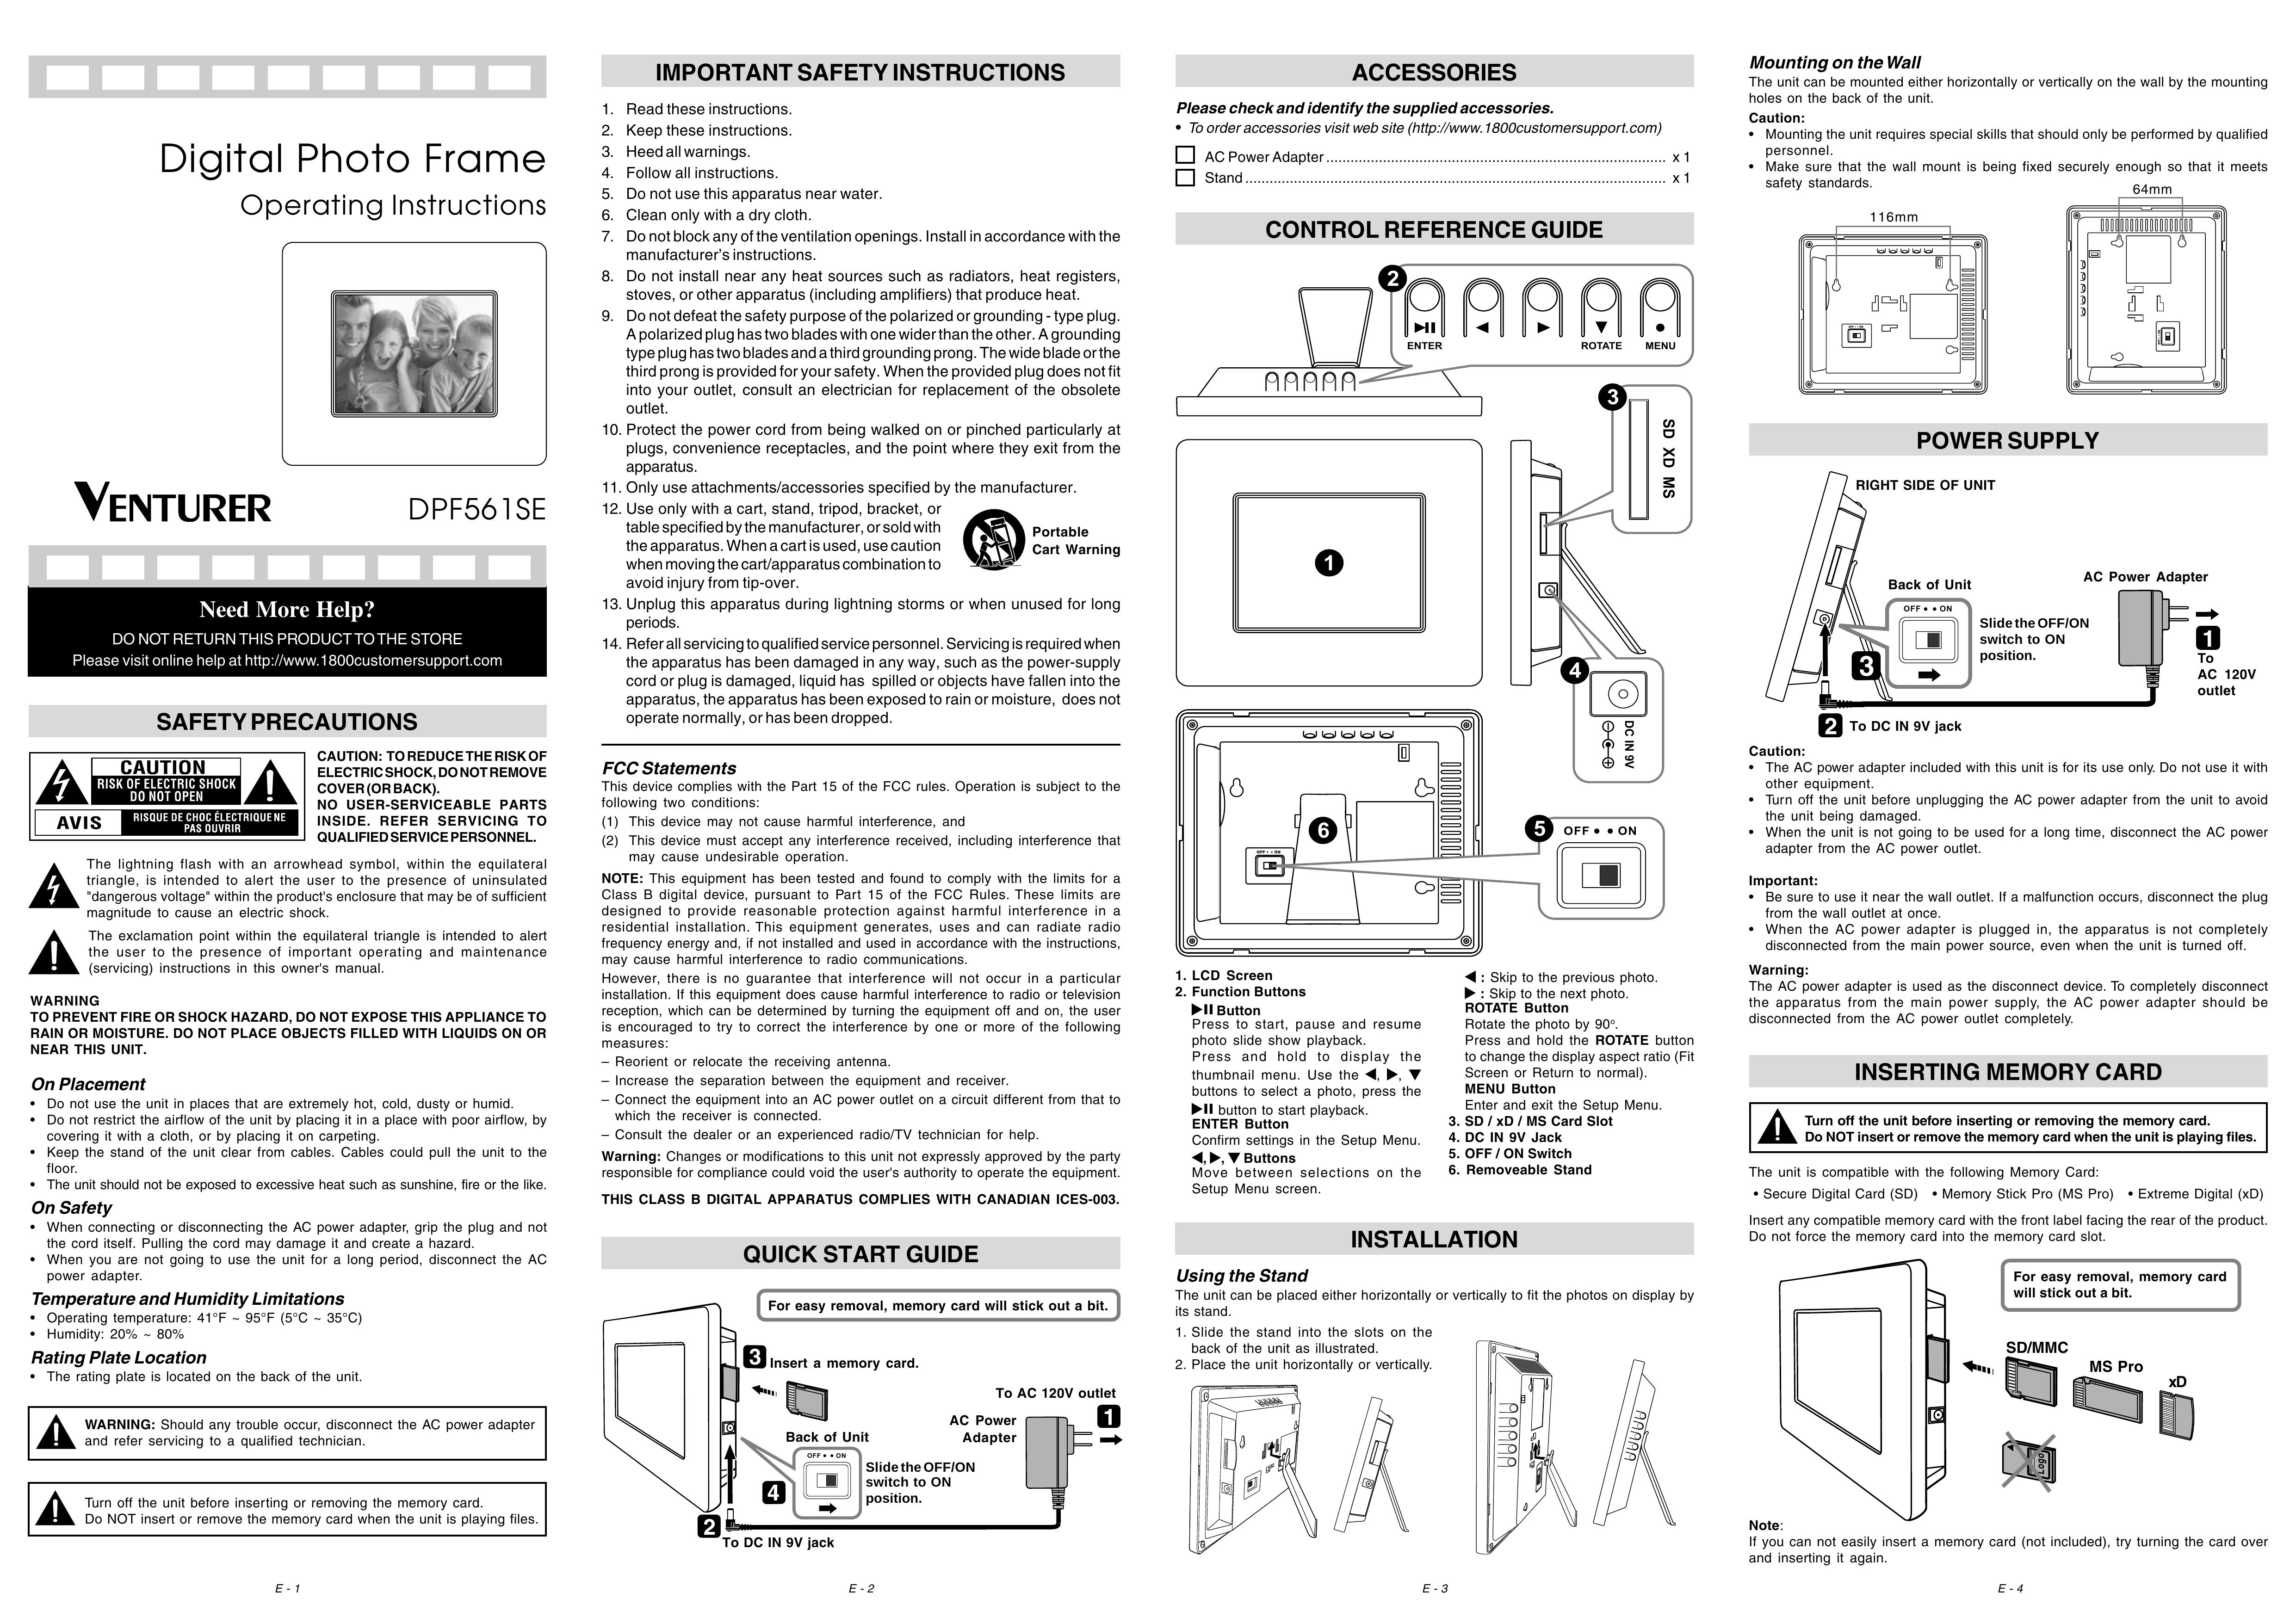 Venturer DPF561SE Digital Photo Frame User Manual